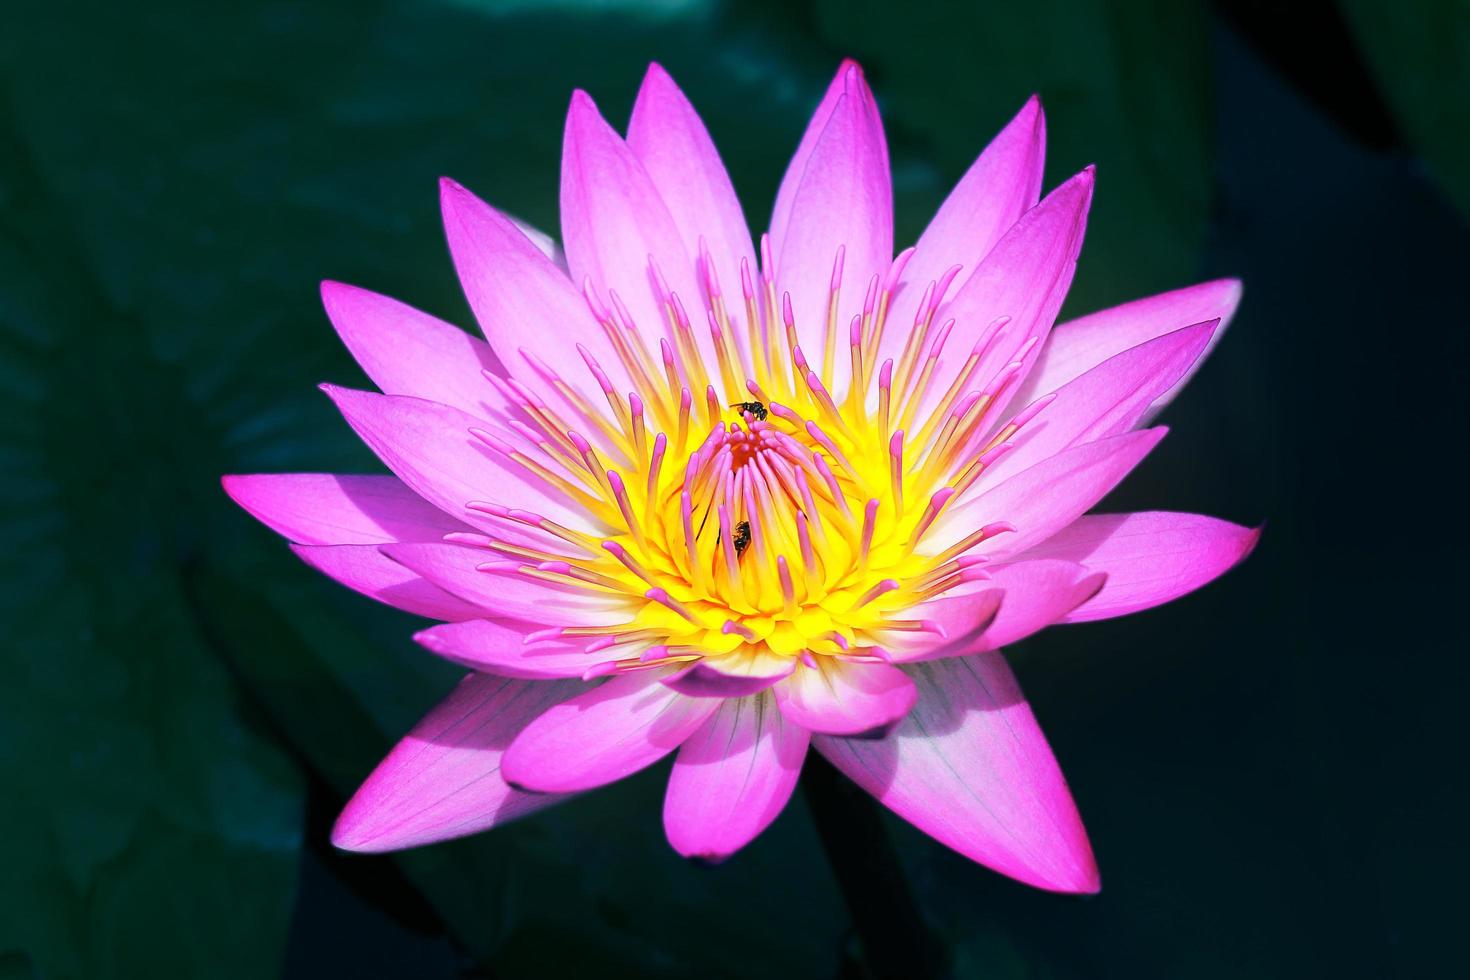 hermosa flor de loto rosa en el estanque, símbolo de la flor de loto del  budismo y las creencias budistas. 8920700 Foto de stock en Vecteezy